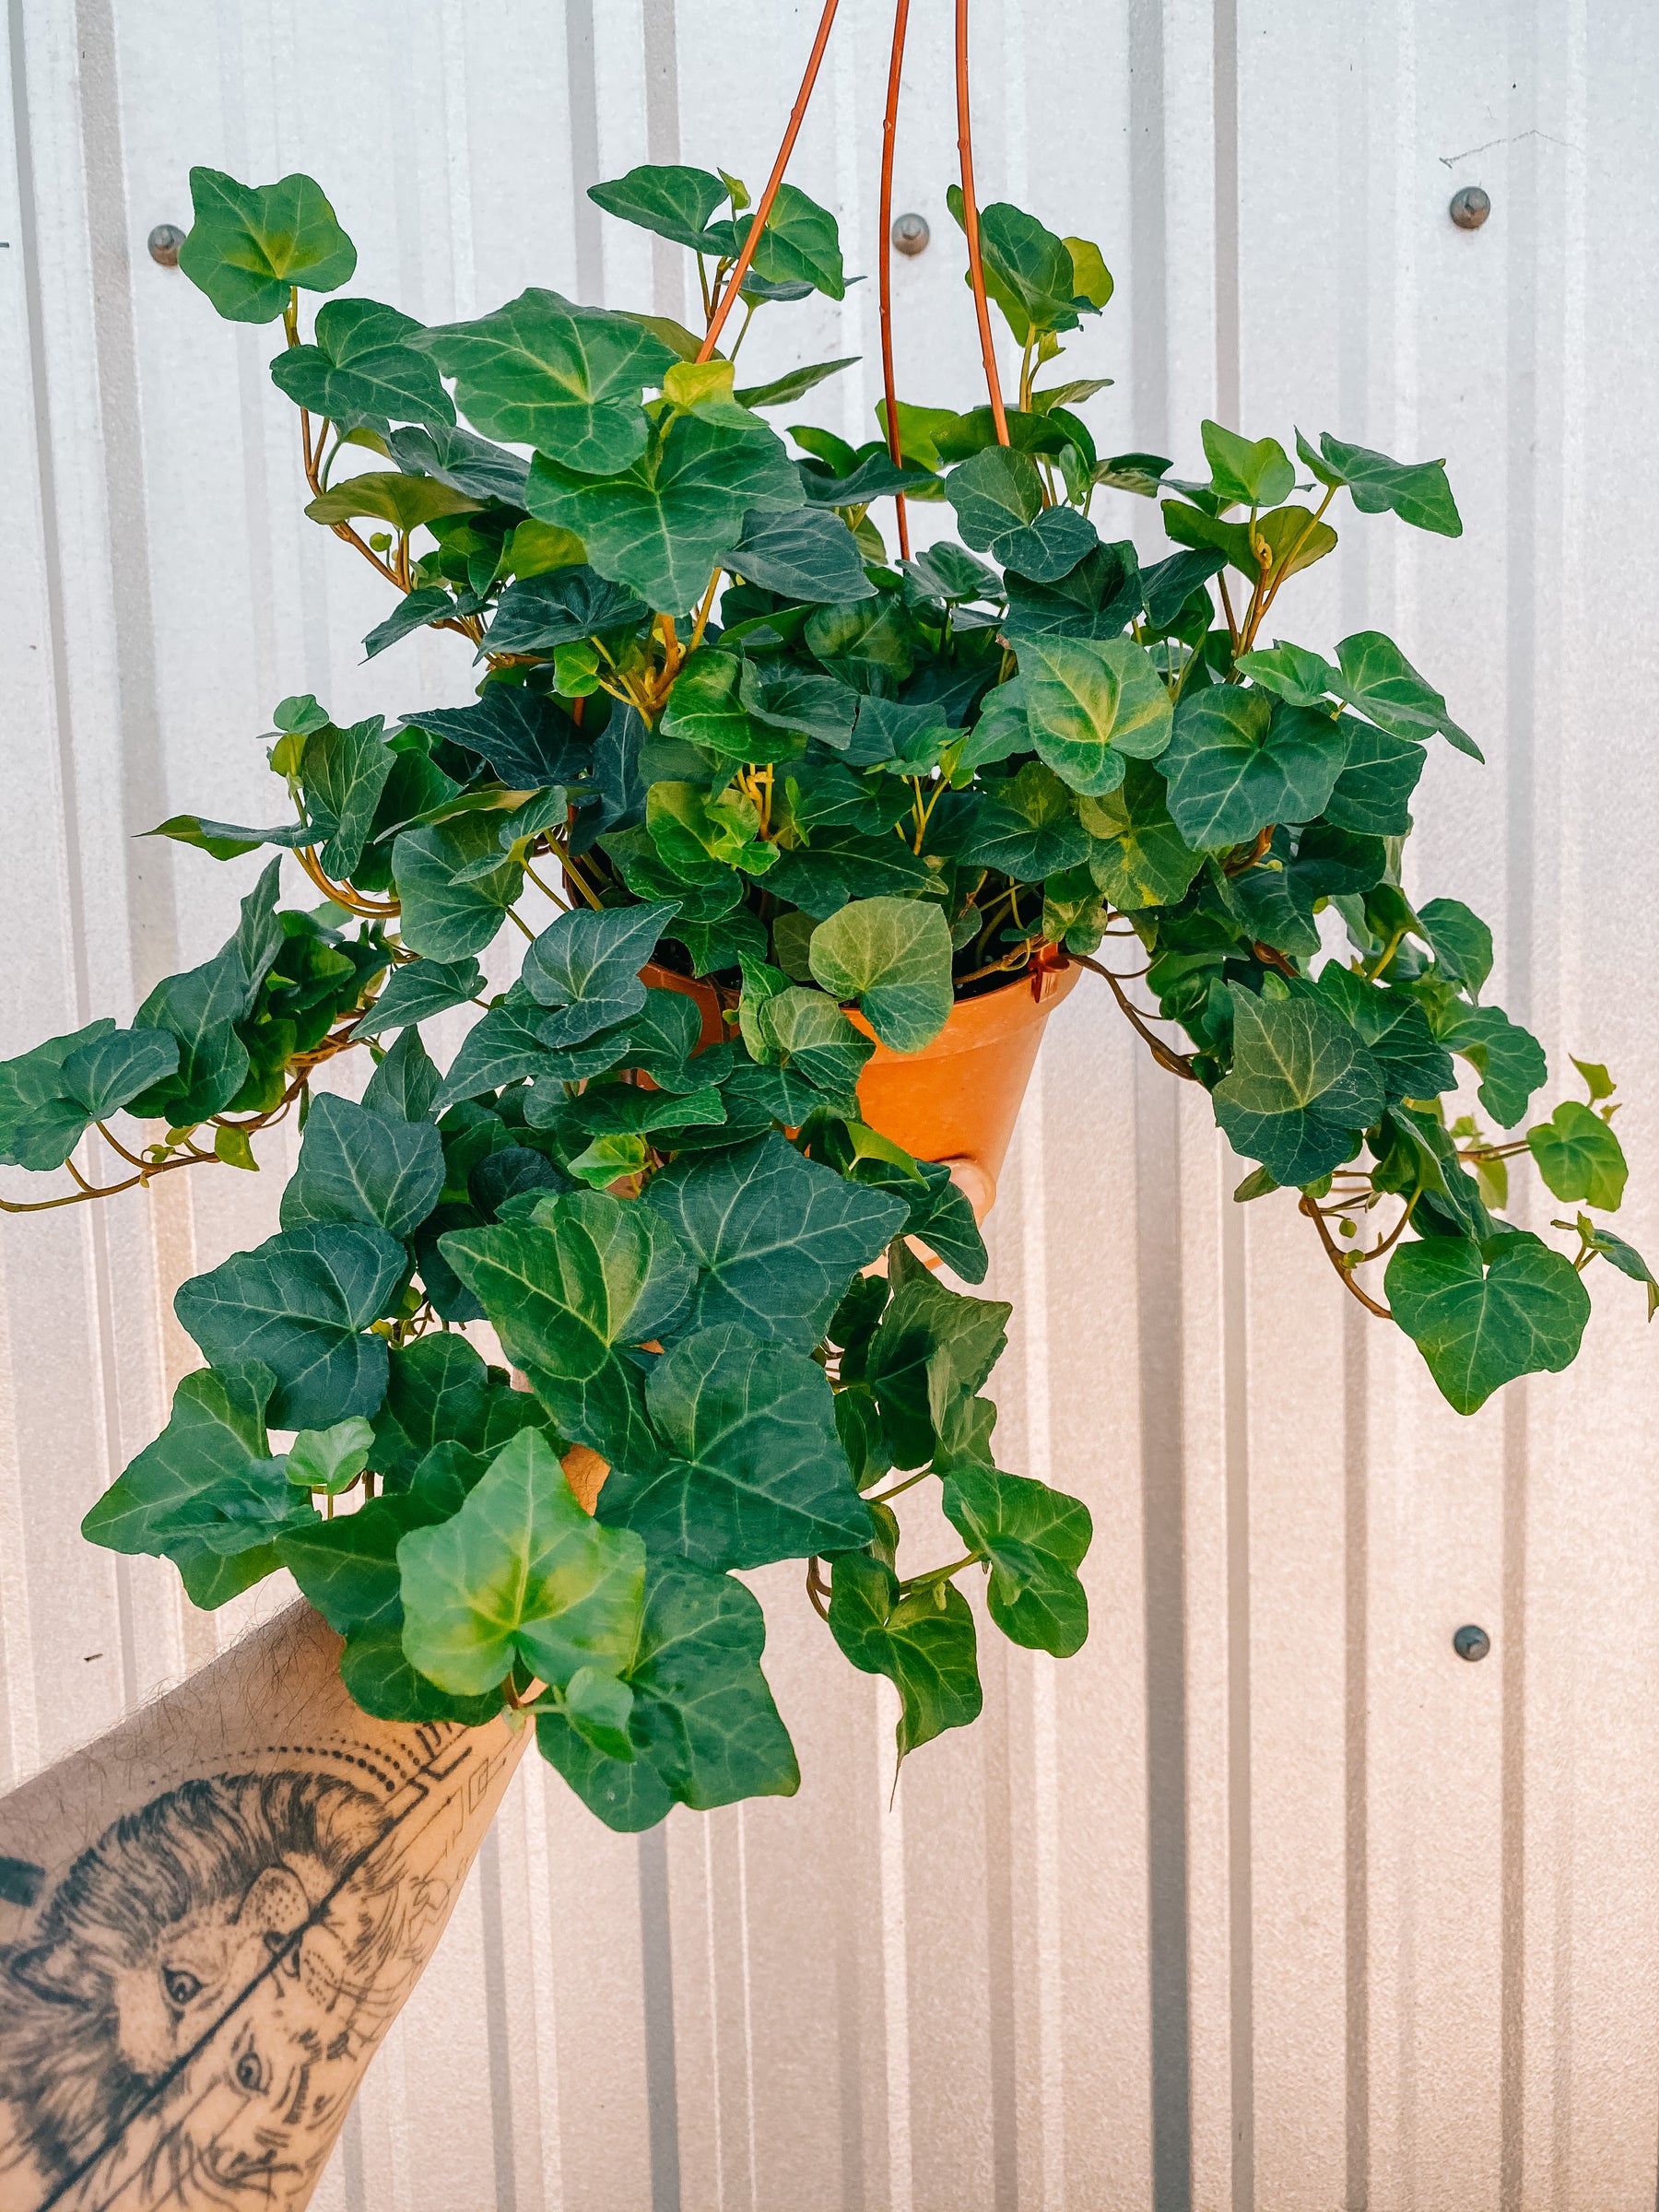 6" English Ivy 'Green' (Hanging Basket)